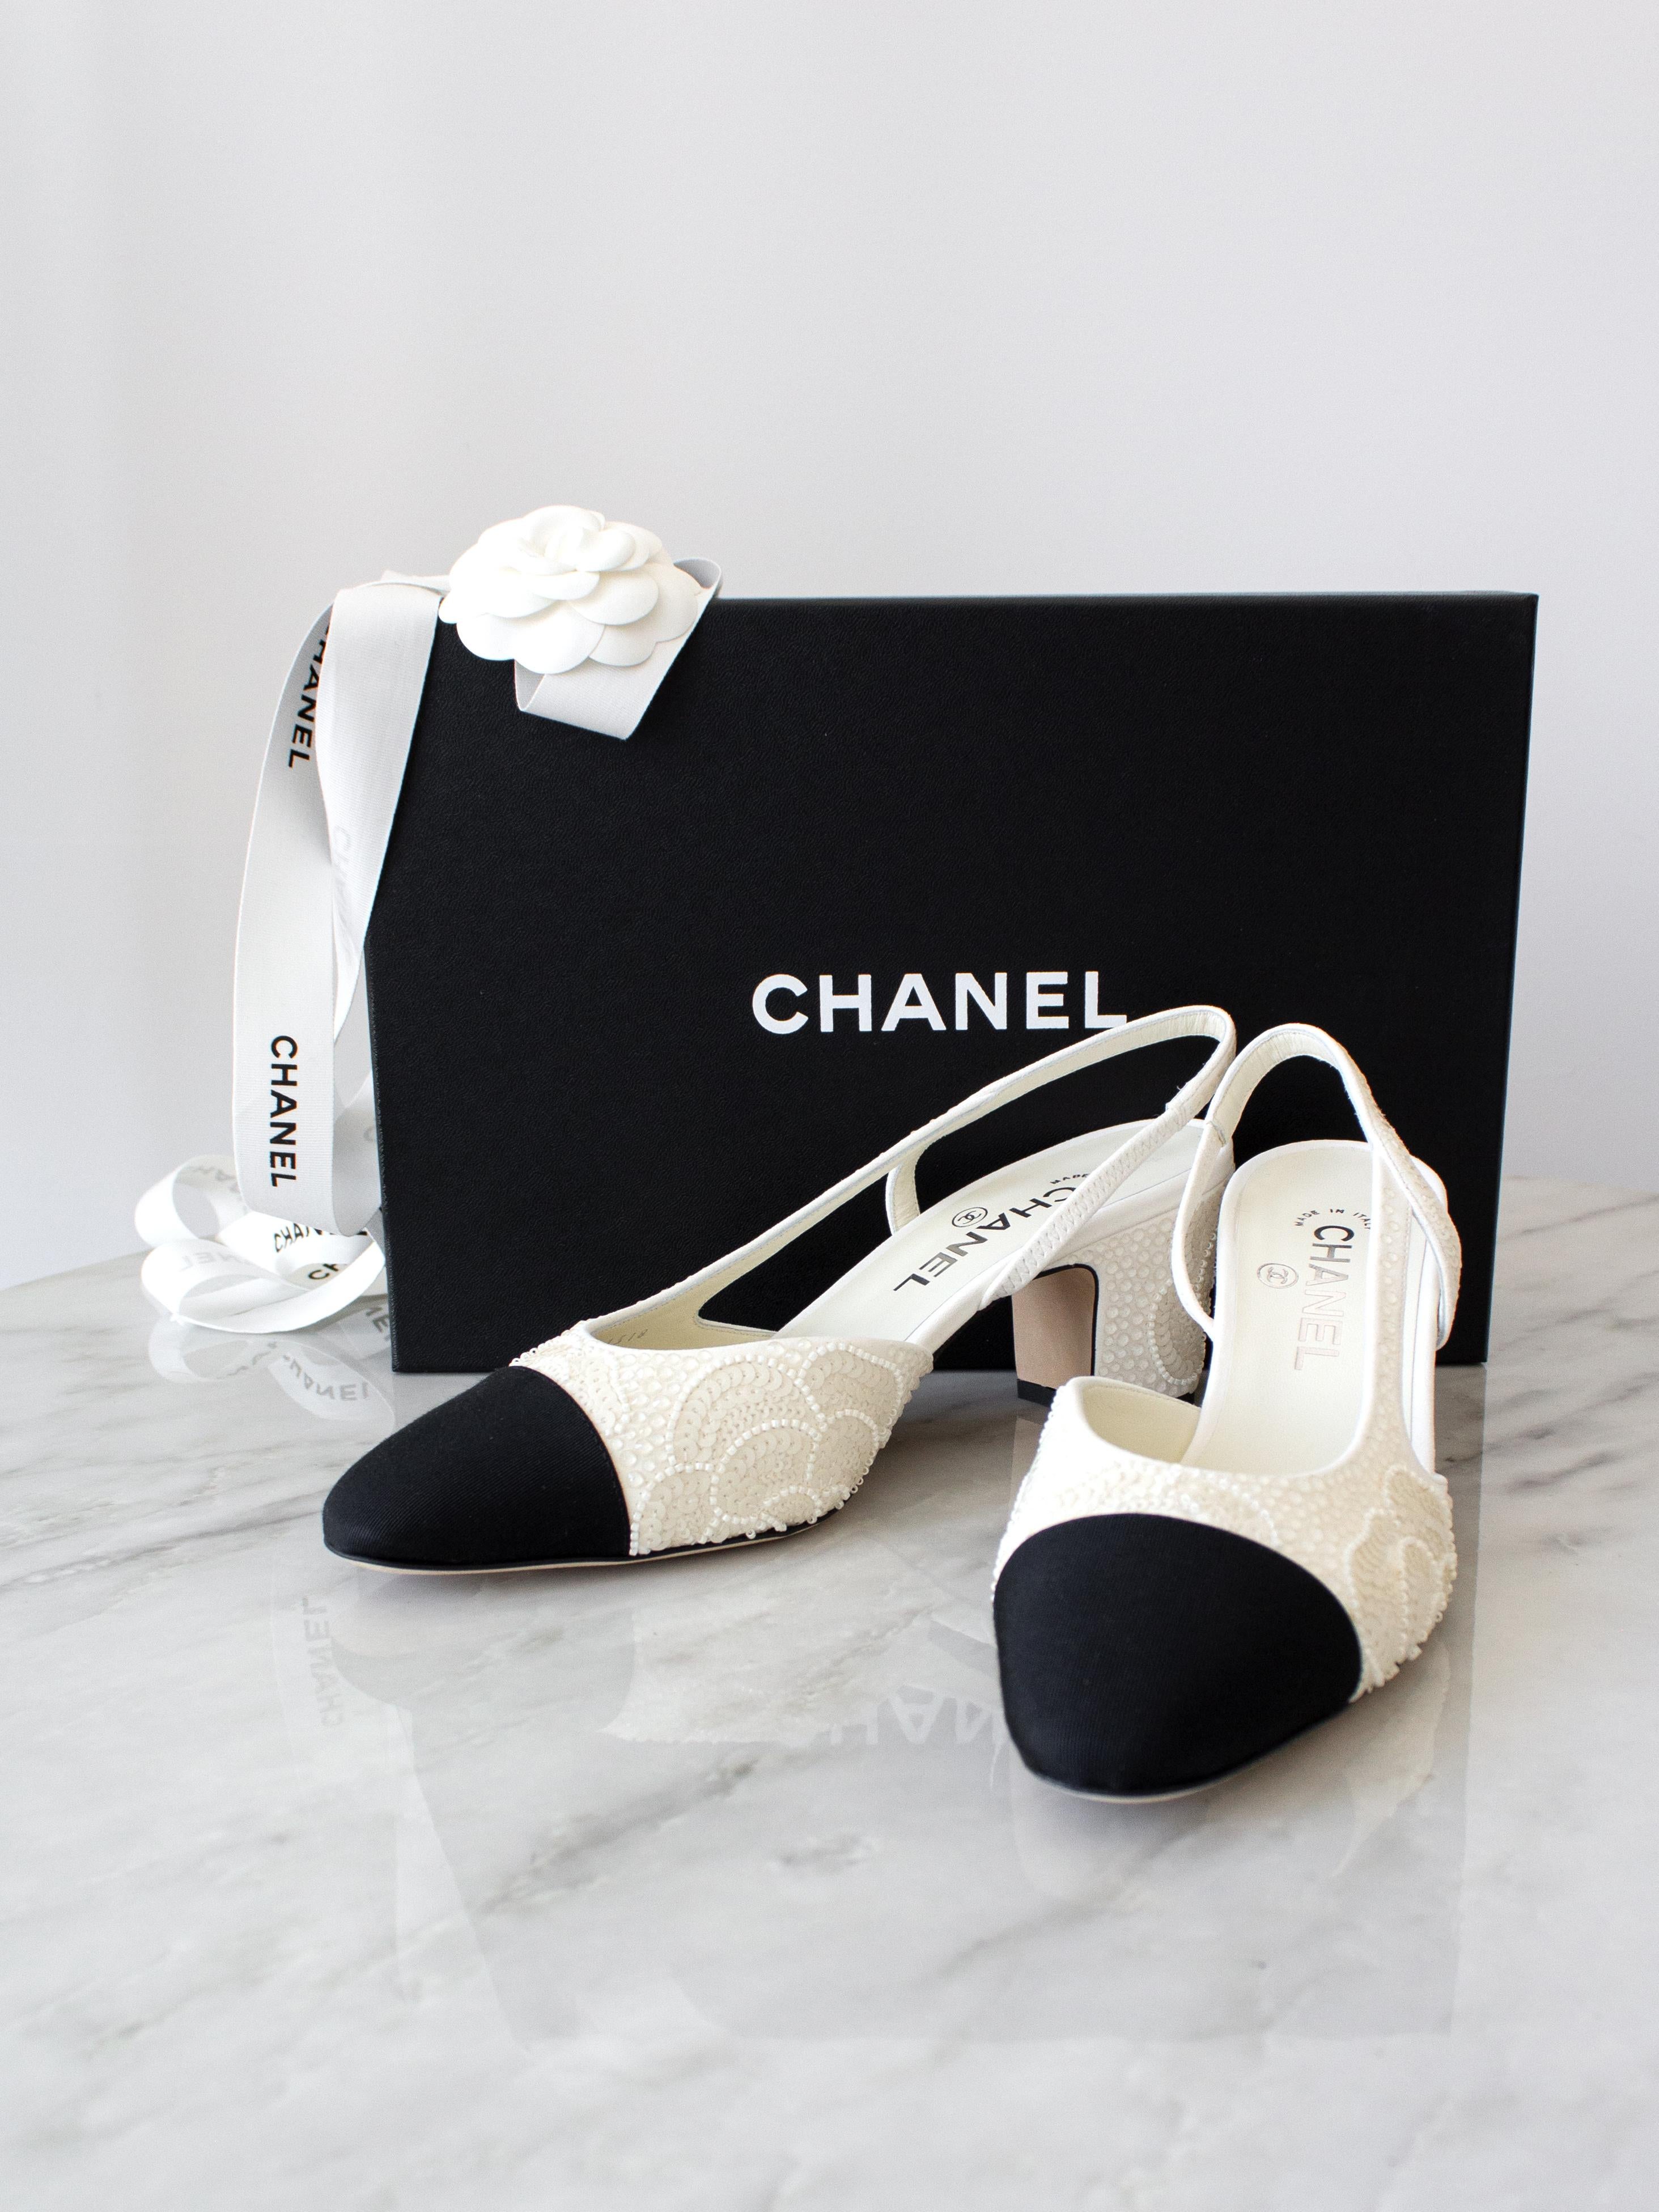 Wir stellen Ihnen die schönsten Schuhe des Jahres 2024 vor: Slingback mit Kristallverzierung aus der Collection'S 24P. Geschmückt mit schimmernden Kristallen, zarten Pailletten und schimmernden Perlen in Form der ikonischen Kamelienblüte von Chanel,